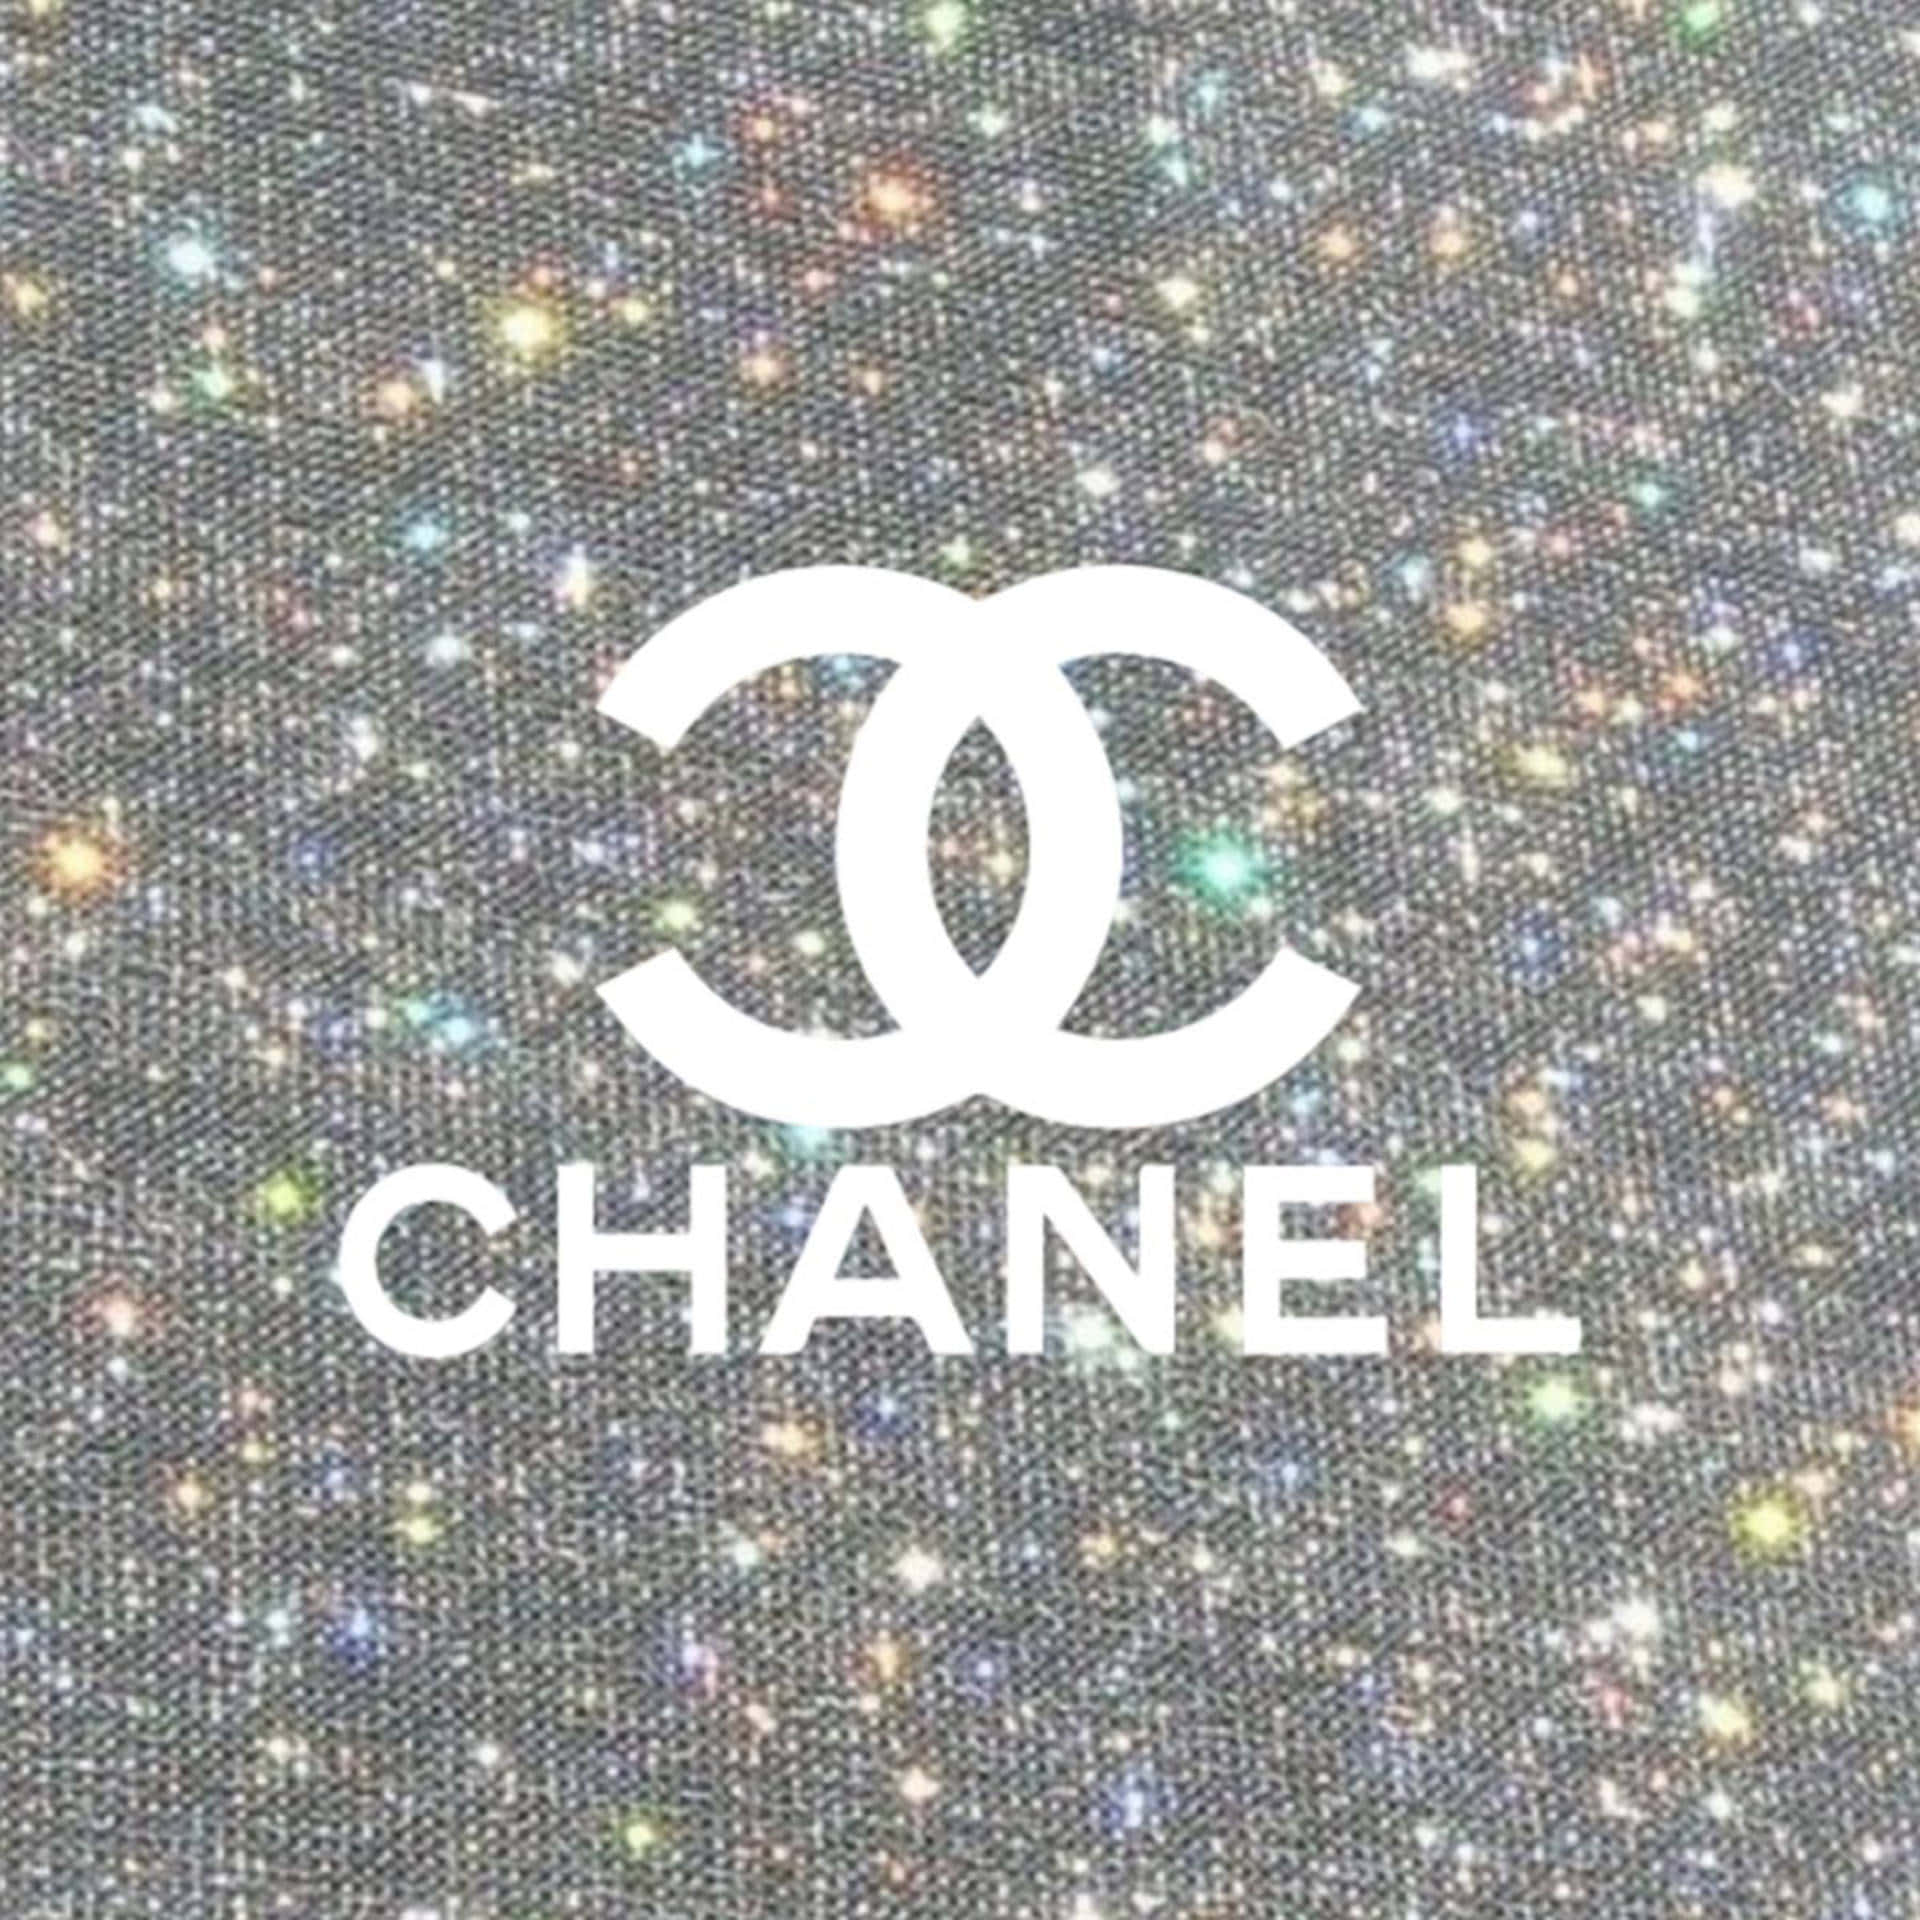 Oplevluksus Med Chanel.